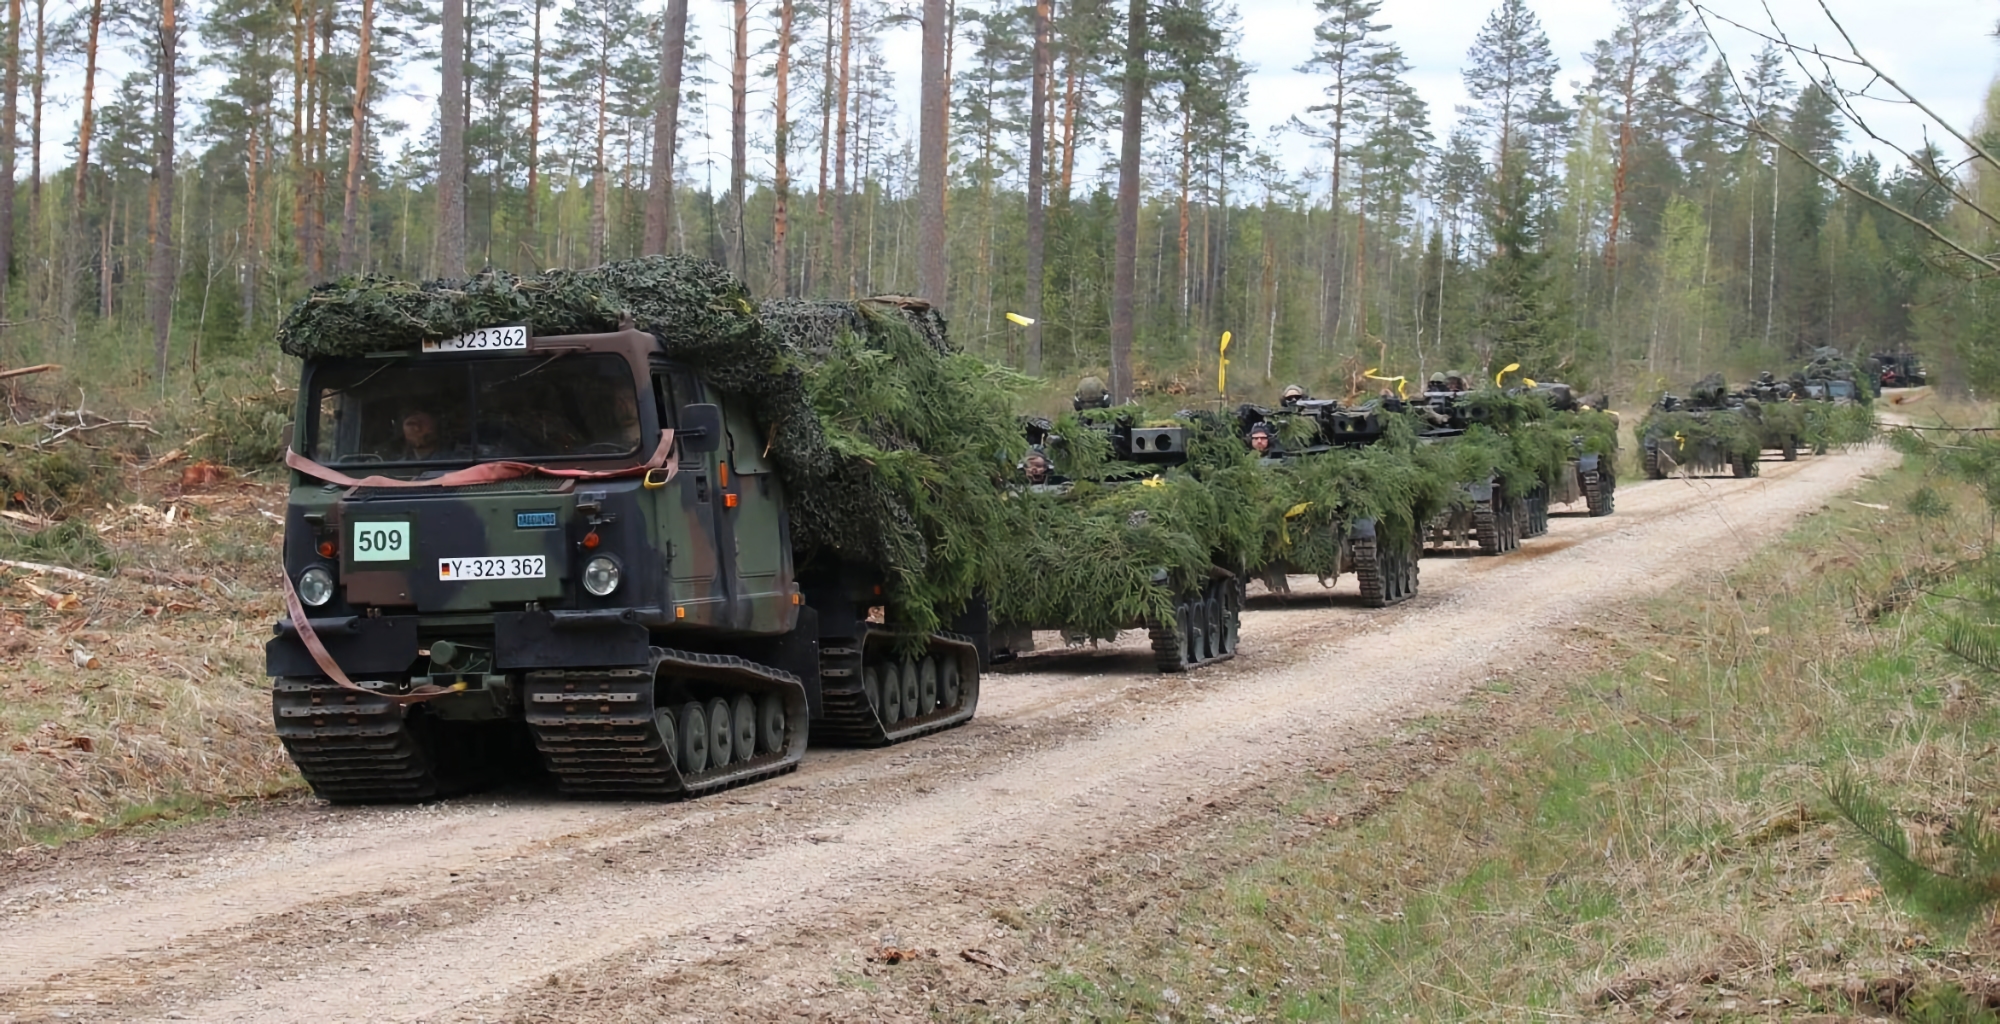 Німеччина відправила в Україну новий пакет військової допомоги, який включає всюдиходи Bandvagn 206 та інше озброєння